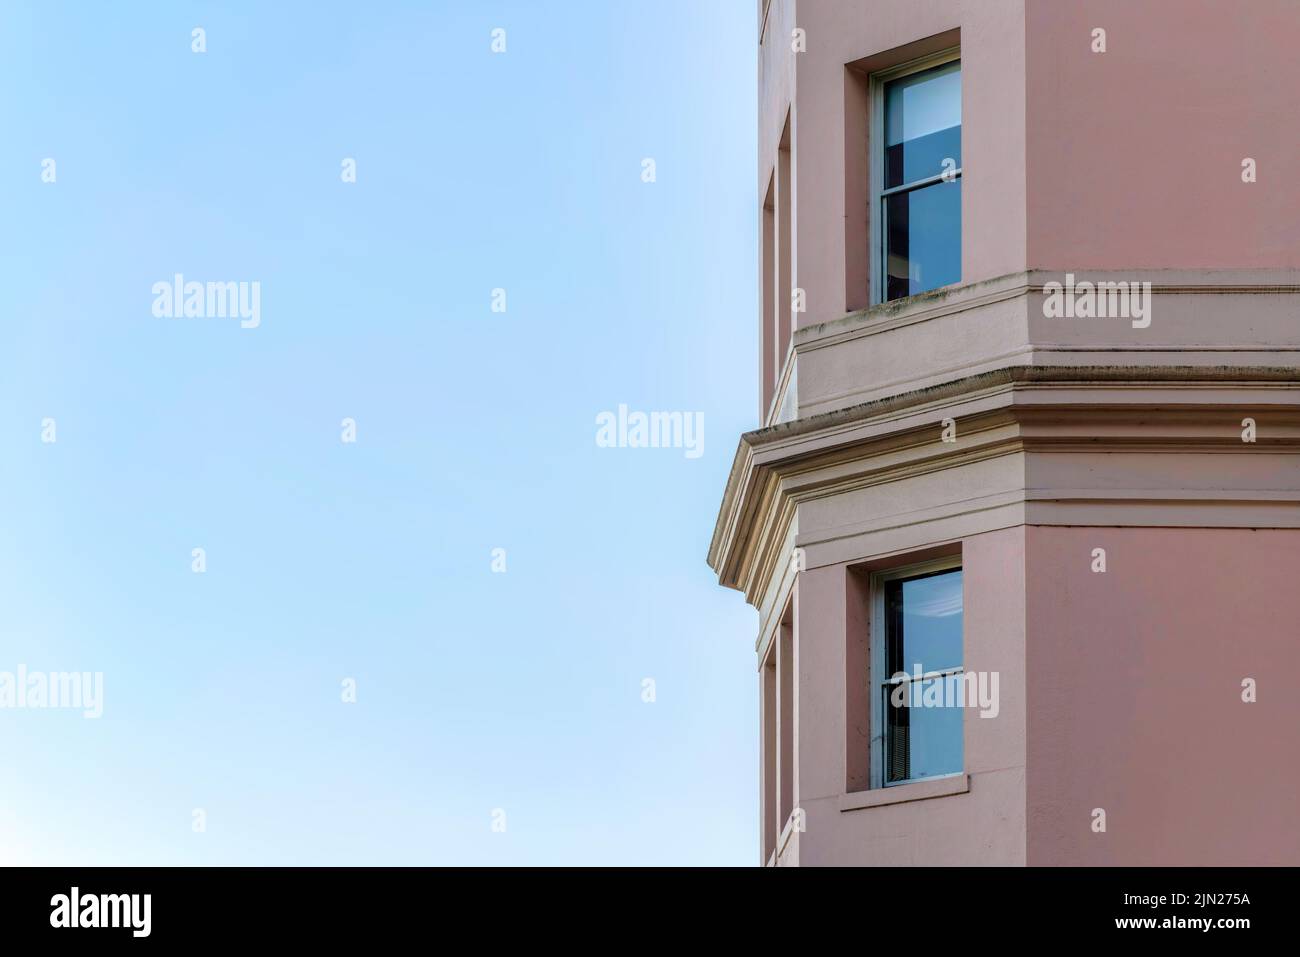 Extérieur des baies vitrées avec panneaux de verre réfléchissants à San Francisco, Californie. Structure de bâtiment sur la droite avec des garnitures beige au milieu du t Banque D'Images